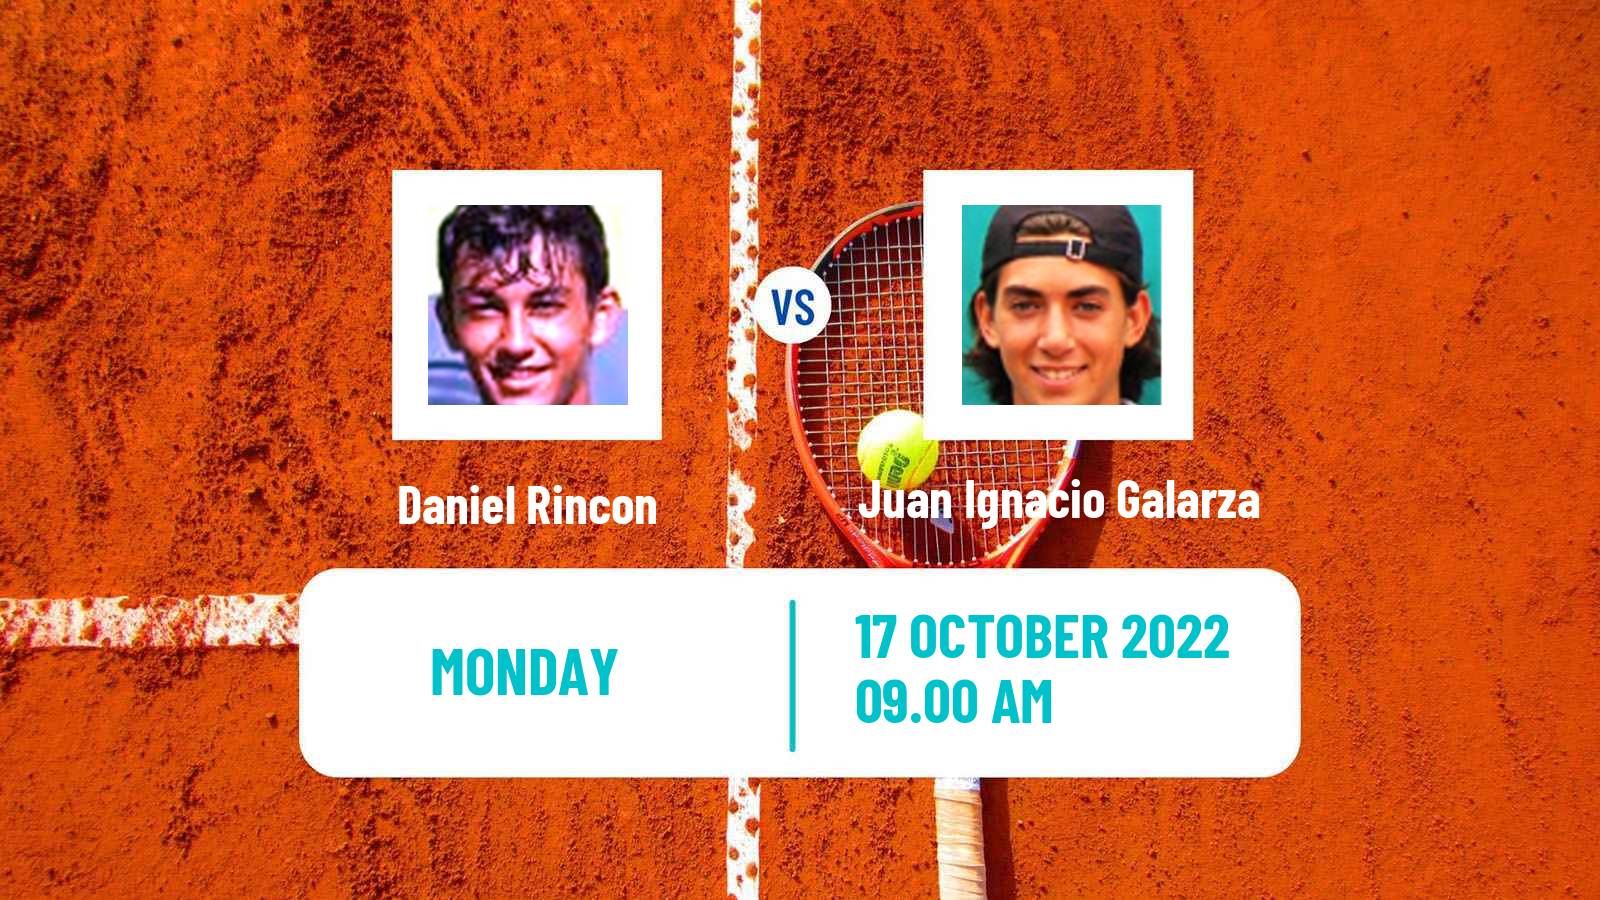 Tennis ATP Challenger Daniel Rincon - Juan Ignacio Galarza